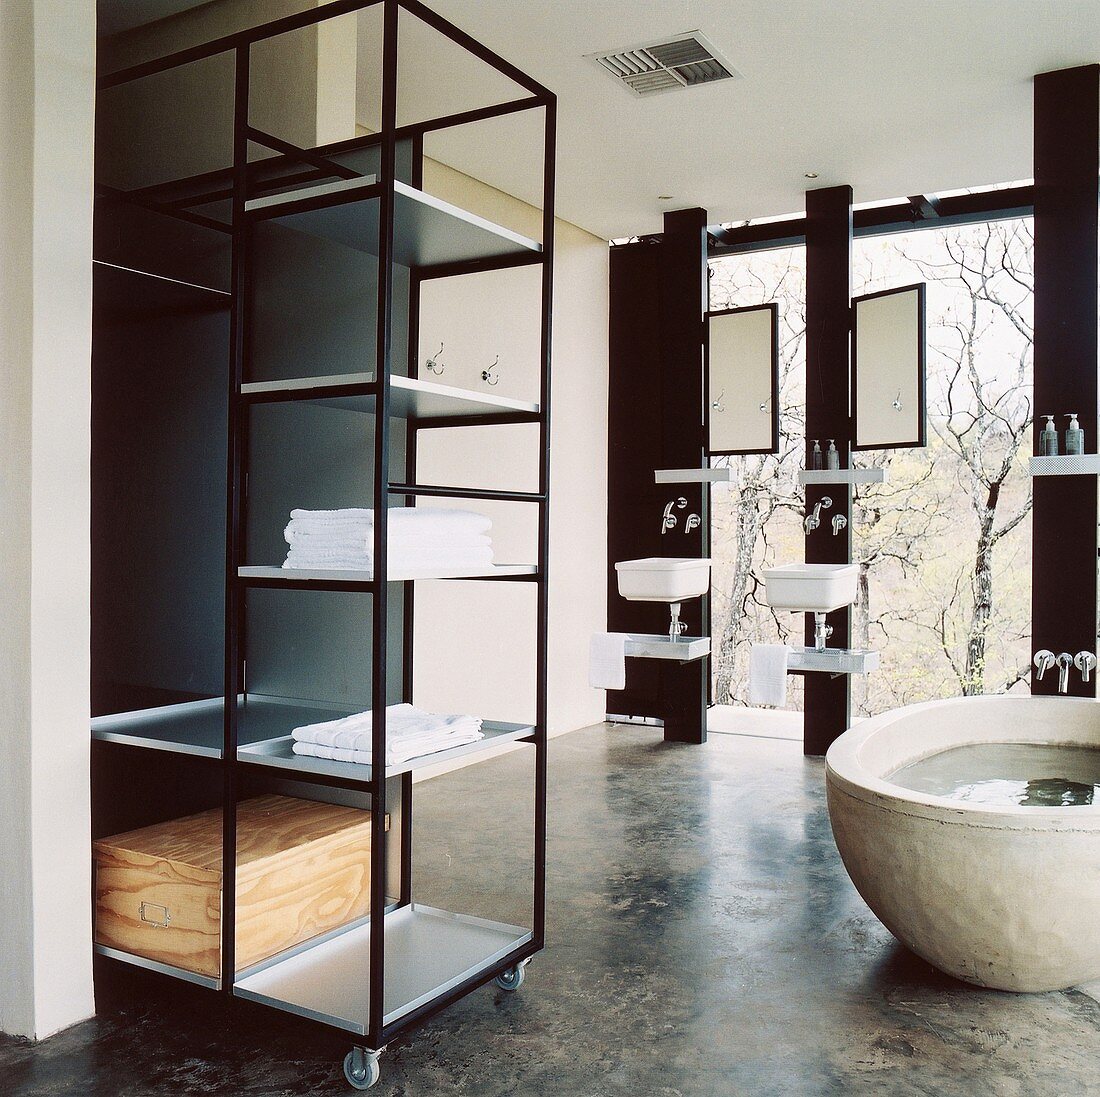 Badezimmer im Bauhaus-Stil mit freistehender Badewanne und Metallregal auf Rollen